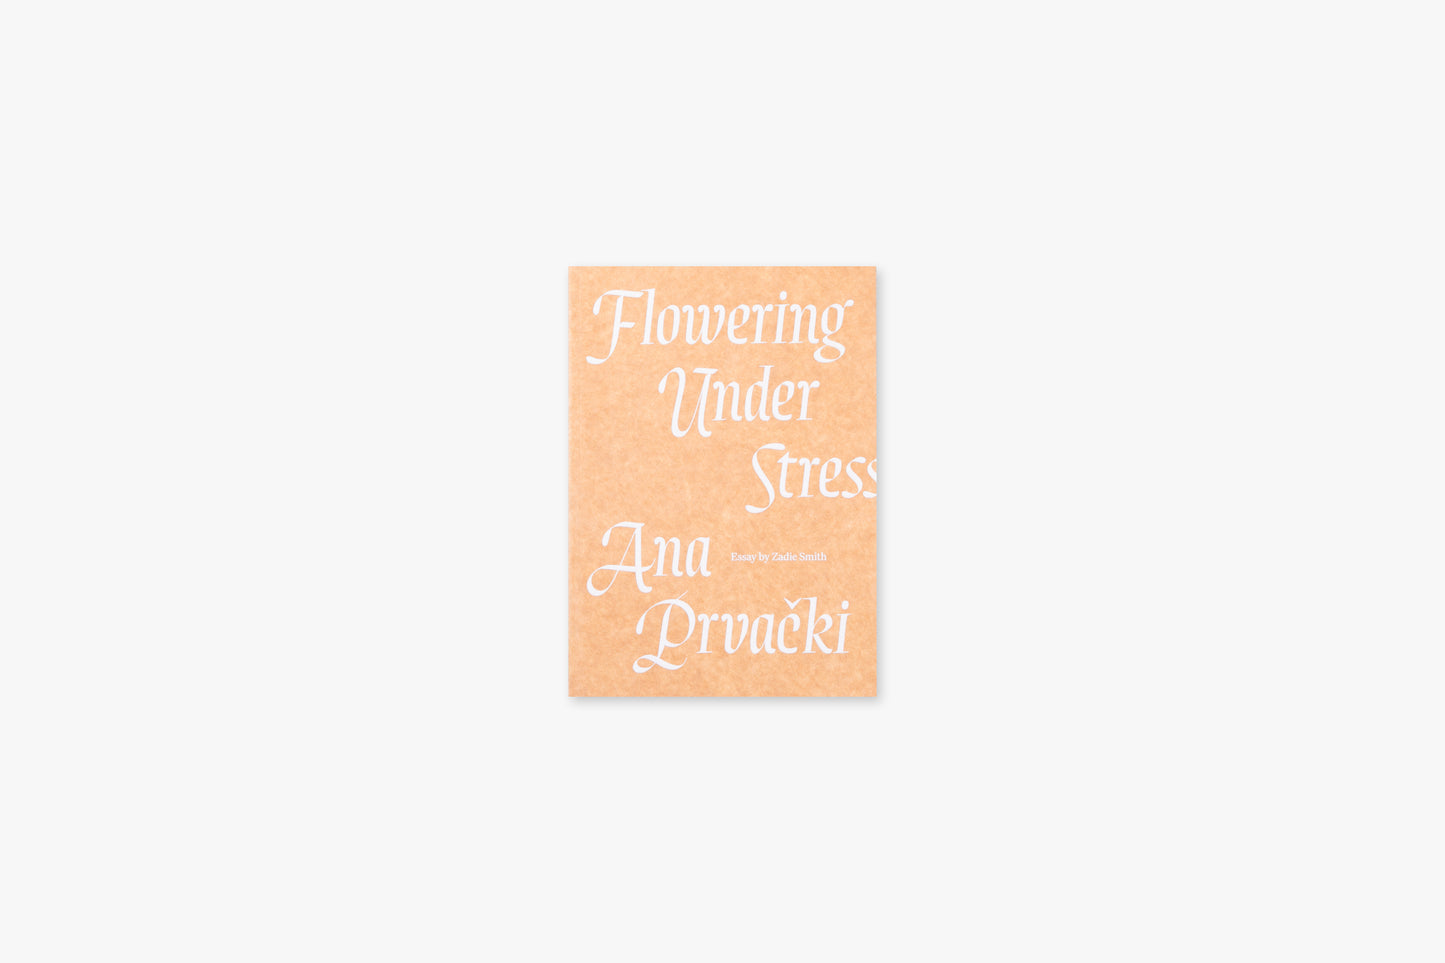 Flowering Under Stress